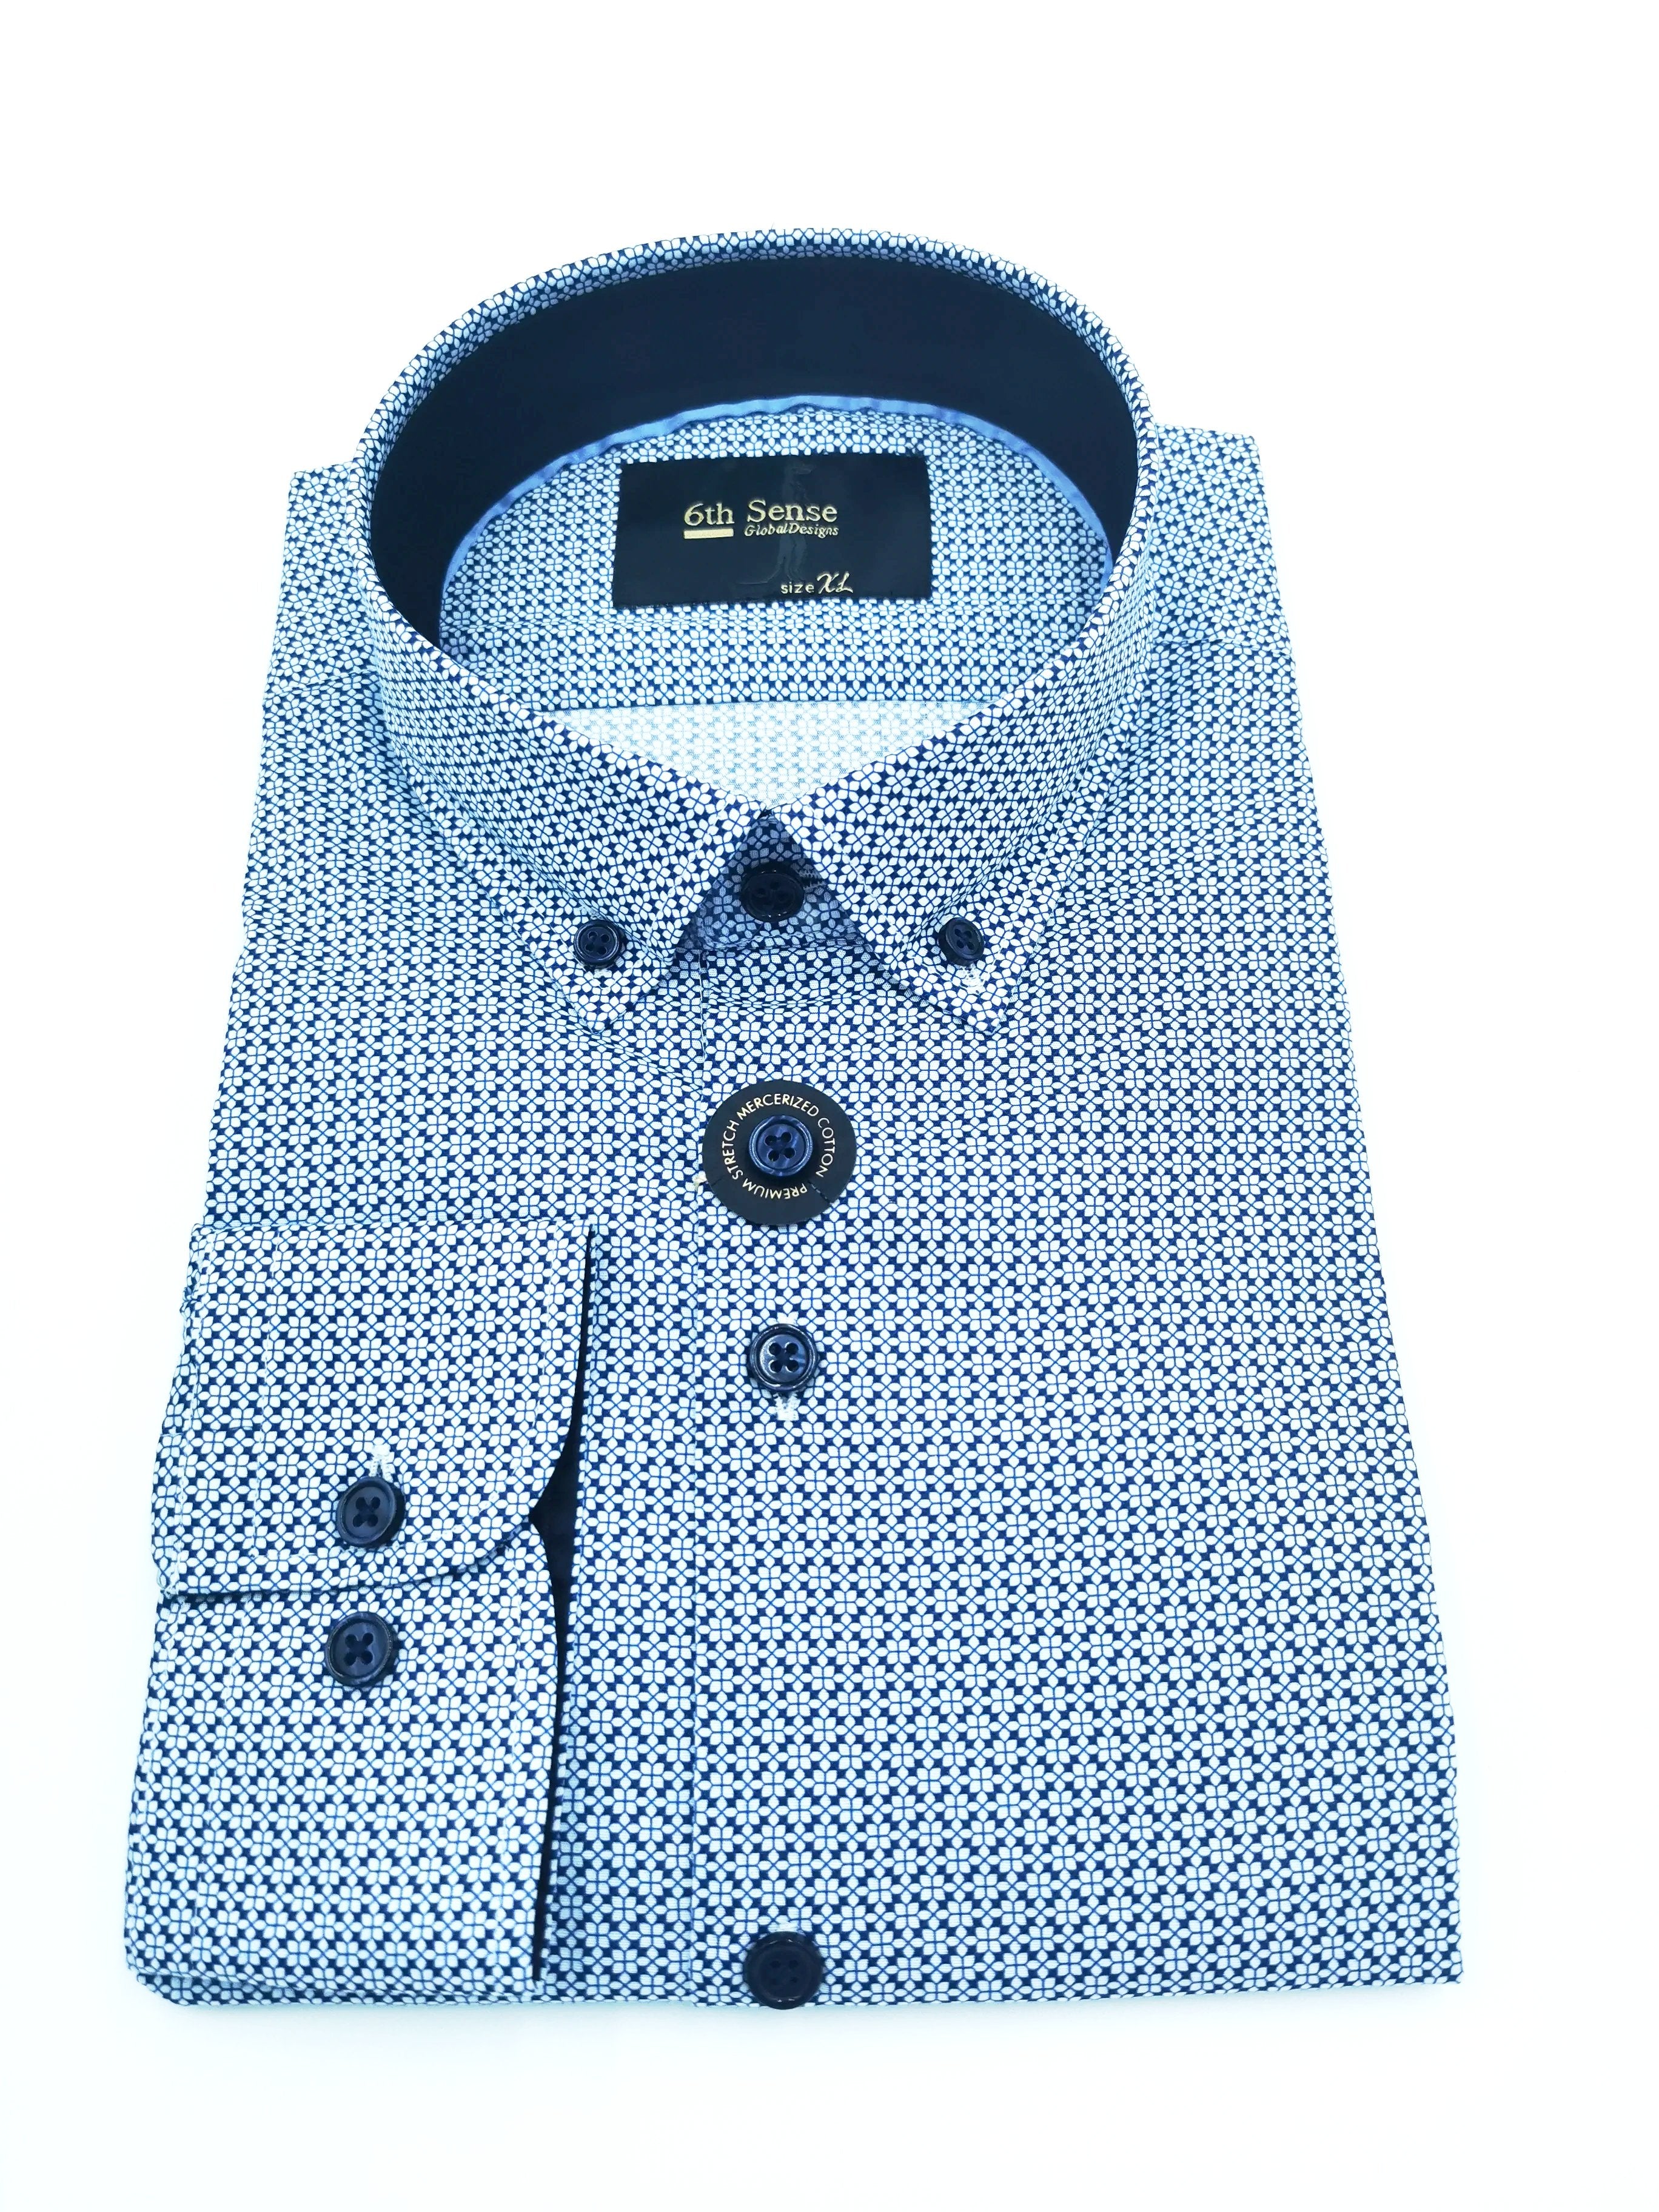 6th Sense Button Down White and Navy Pattern Shirt